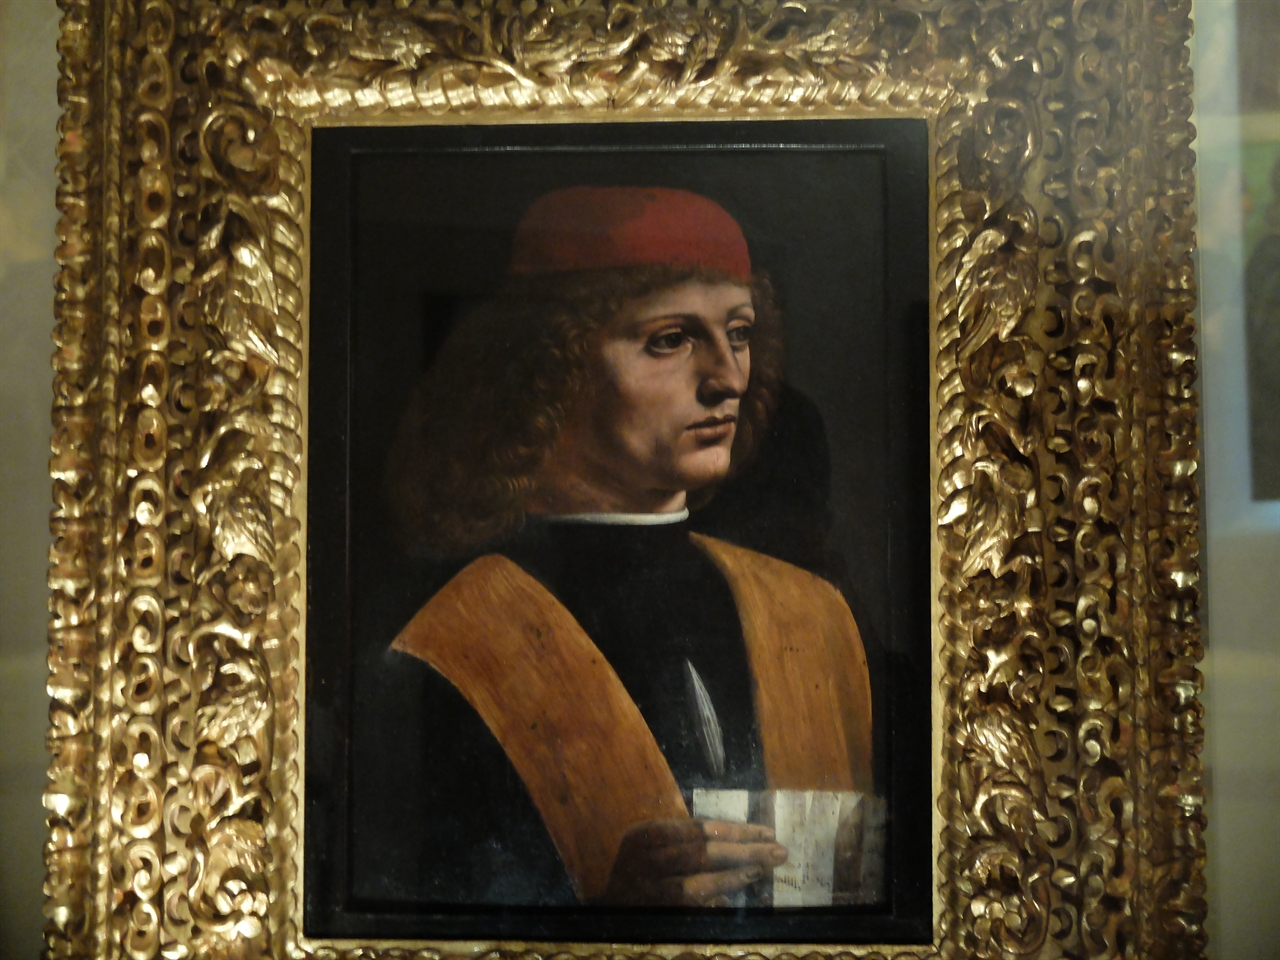 레오나르도 다빈치의 '음악가의 초상', 밀라노 암브로시아나 미술관. 밀라노 대성당의 합창단장 프란치노 가푸리오의 초상으로 알려진 이 그림은 다빈치가 남긴 유일한 남성 초상화입니다. 